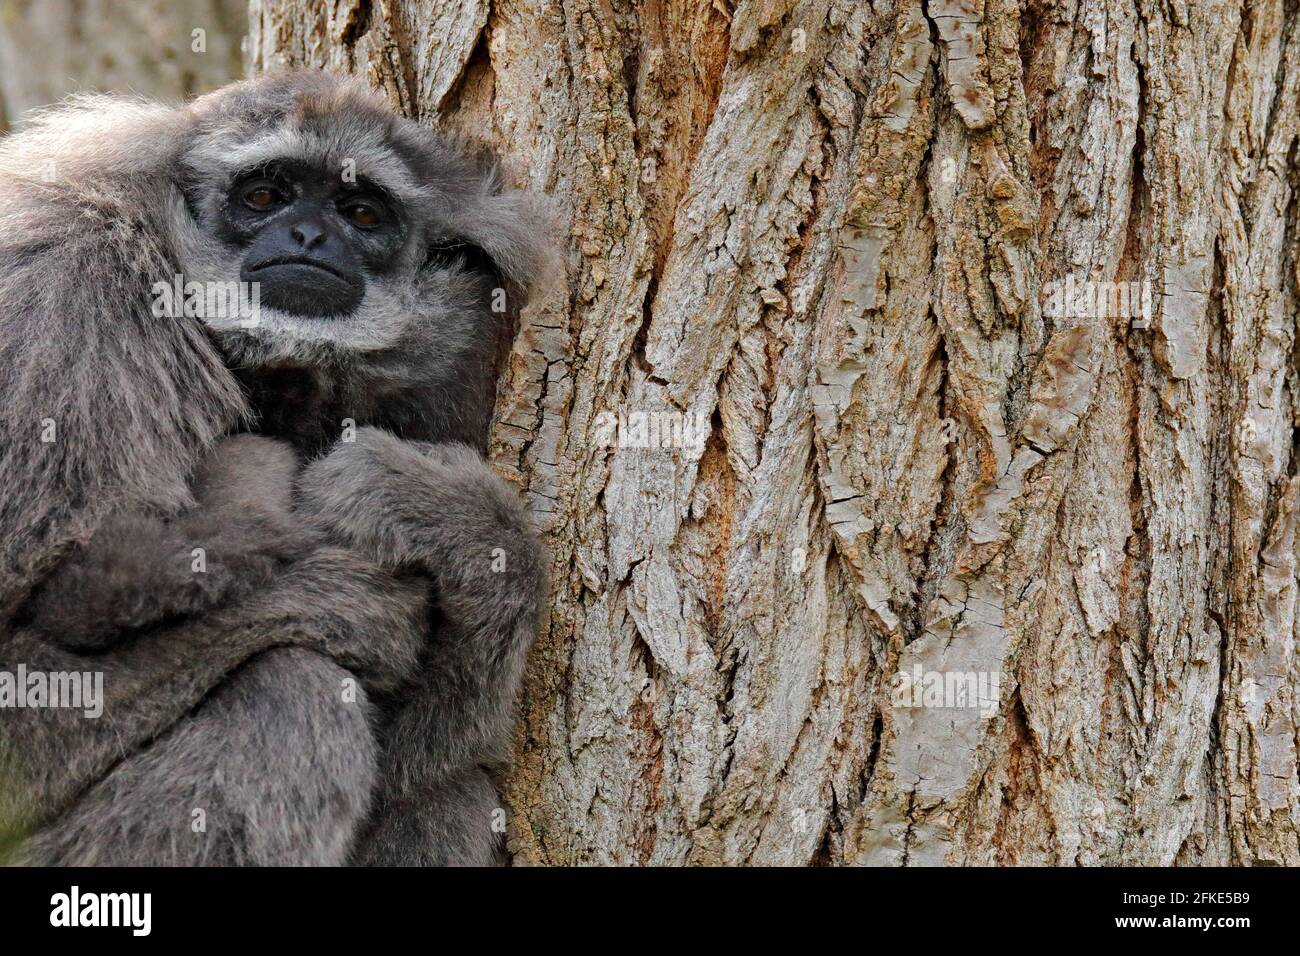 Javan silvery Gibbon, Hylobates moloch, Affe in der Natur Wald Lebensraum. Grauer Gibbon auf dem Baum, Java, Indonesien in Asien. Wildlife-Szene aus wi Stockfoto